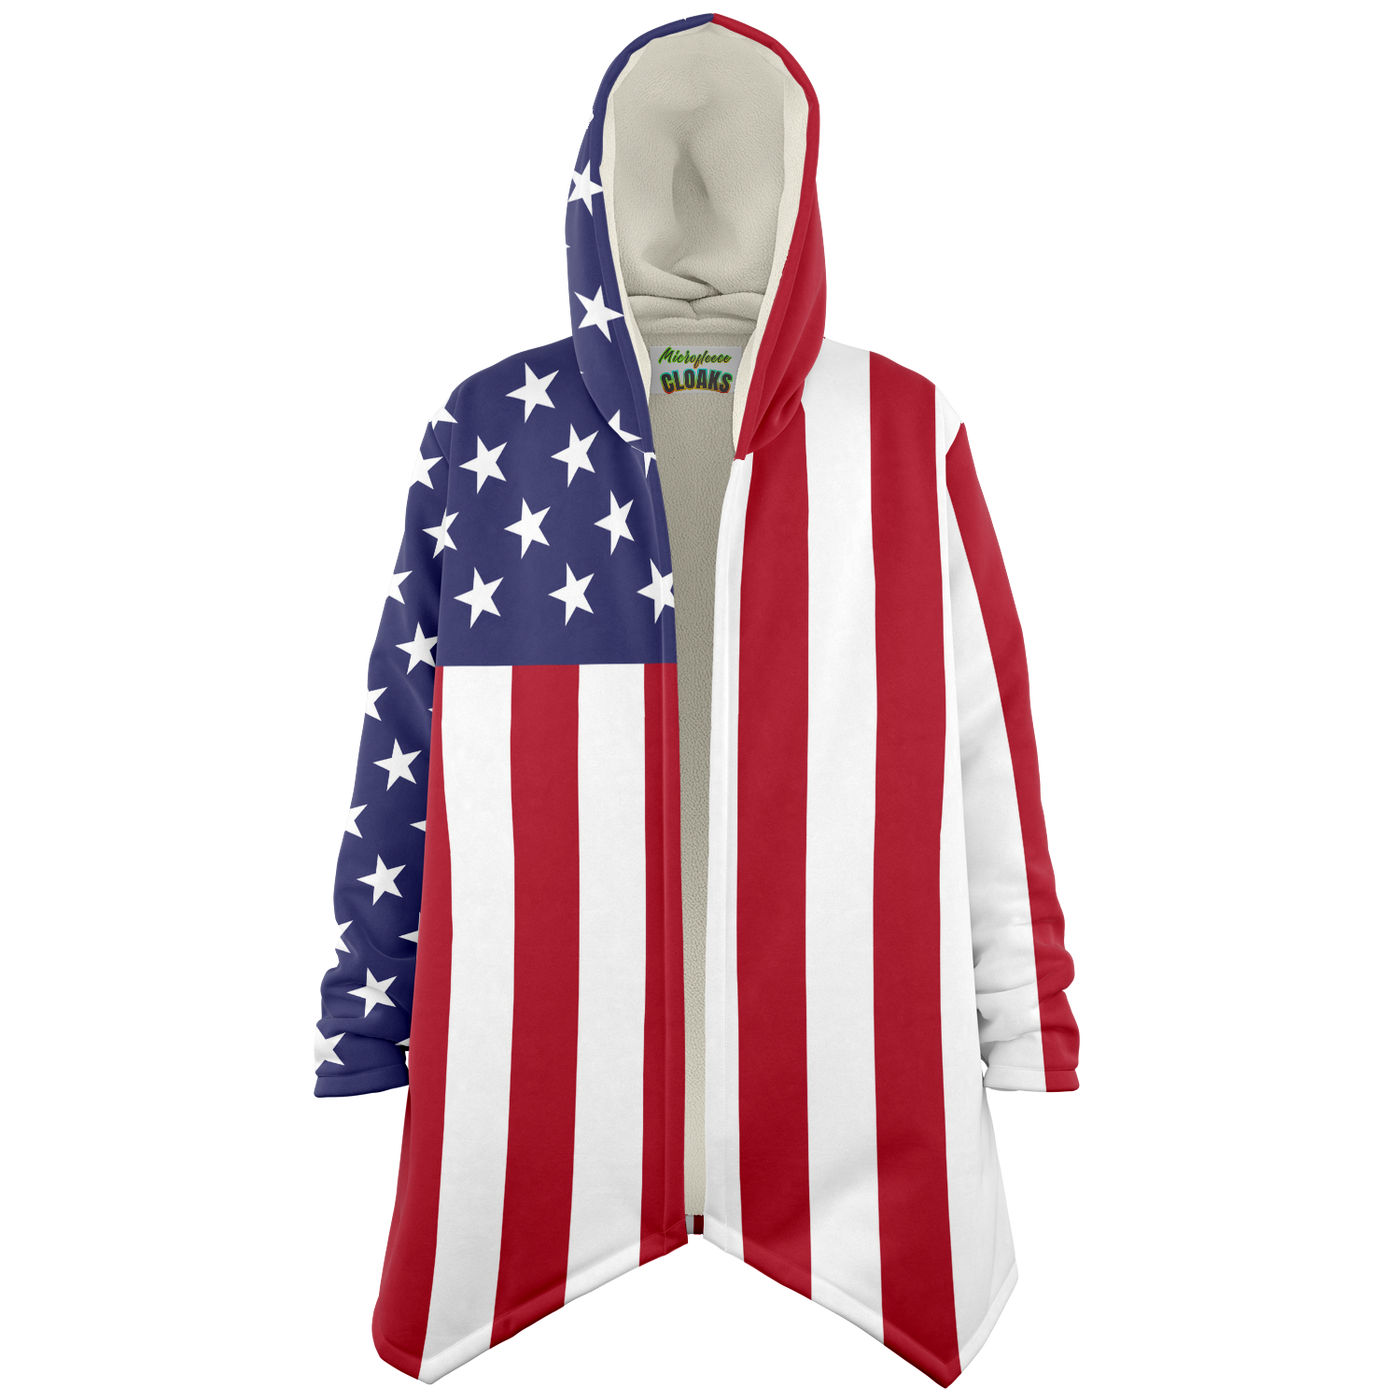 Capa de Microfibra Polar com a Bandeira dos Estados Unidos